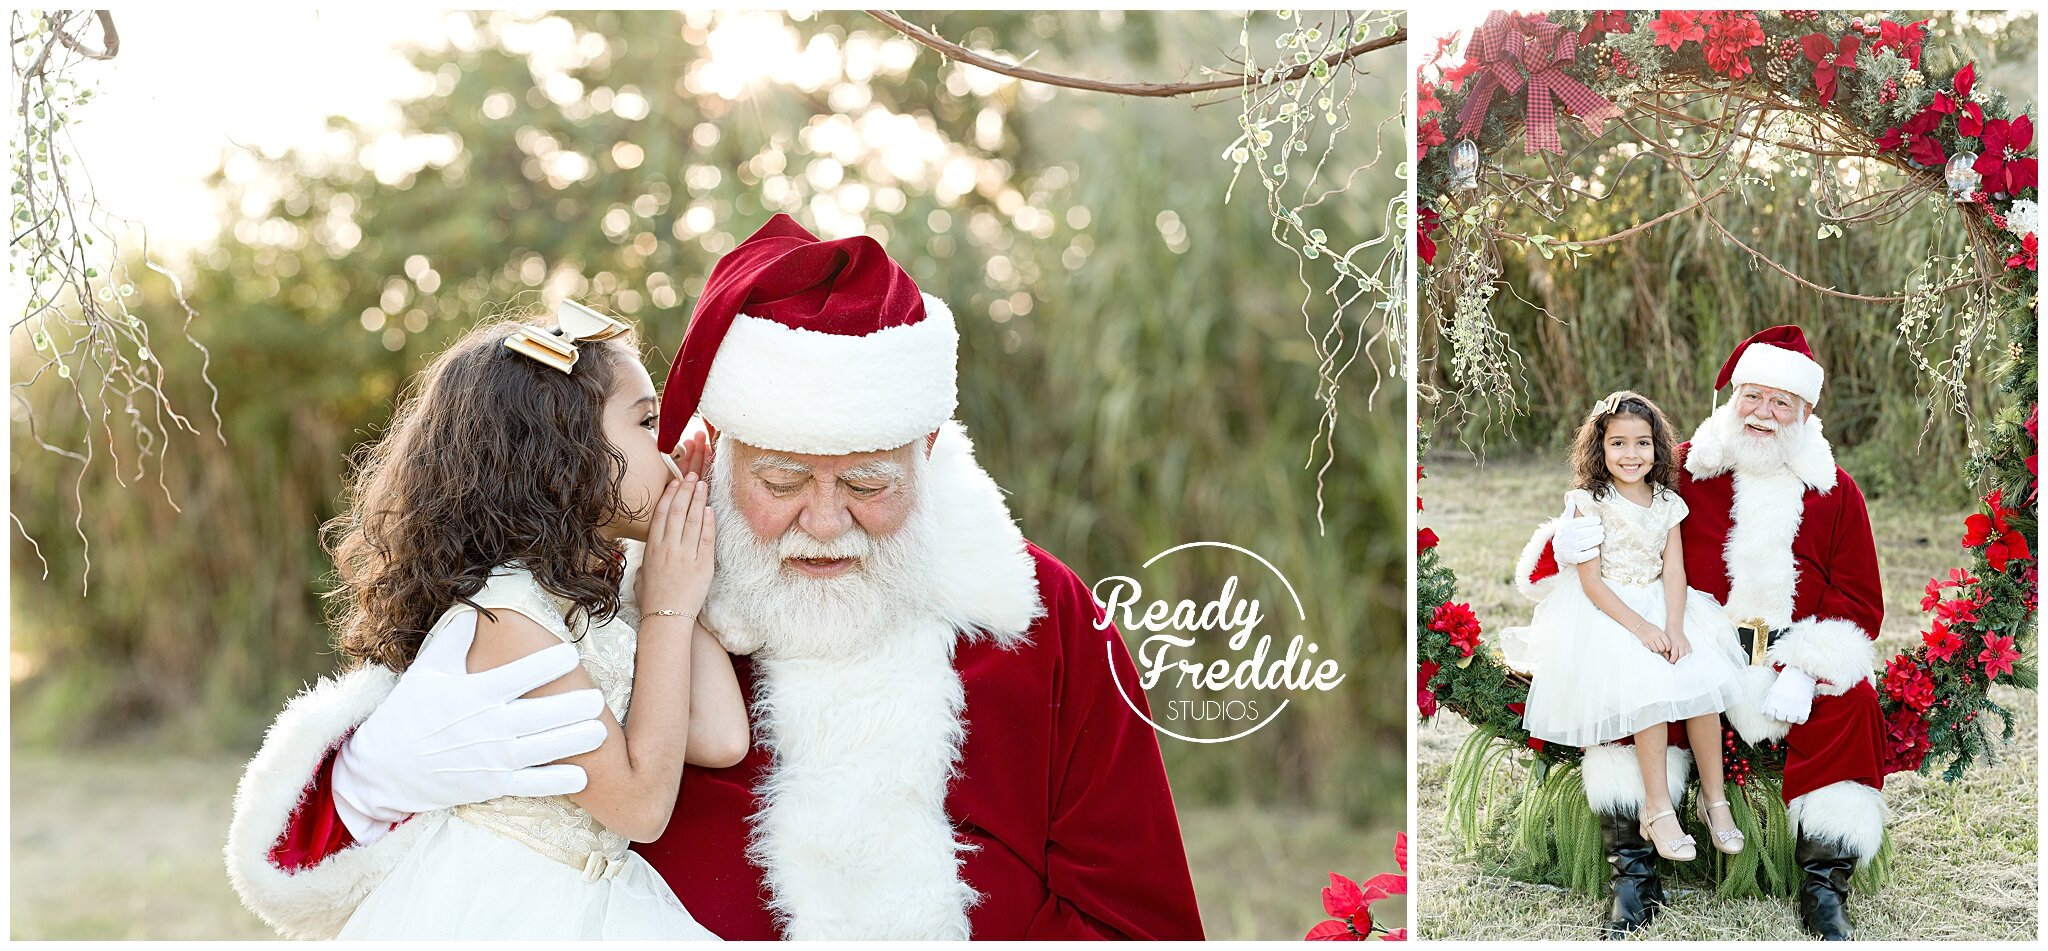 Kids whispering to Santa during outdoor holiday minis | Ready Freddie Studios Miami, FL